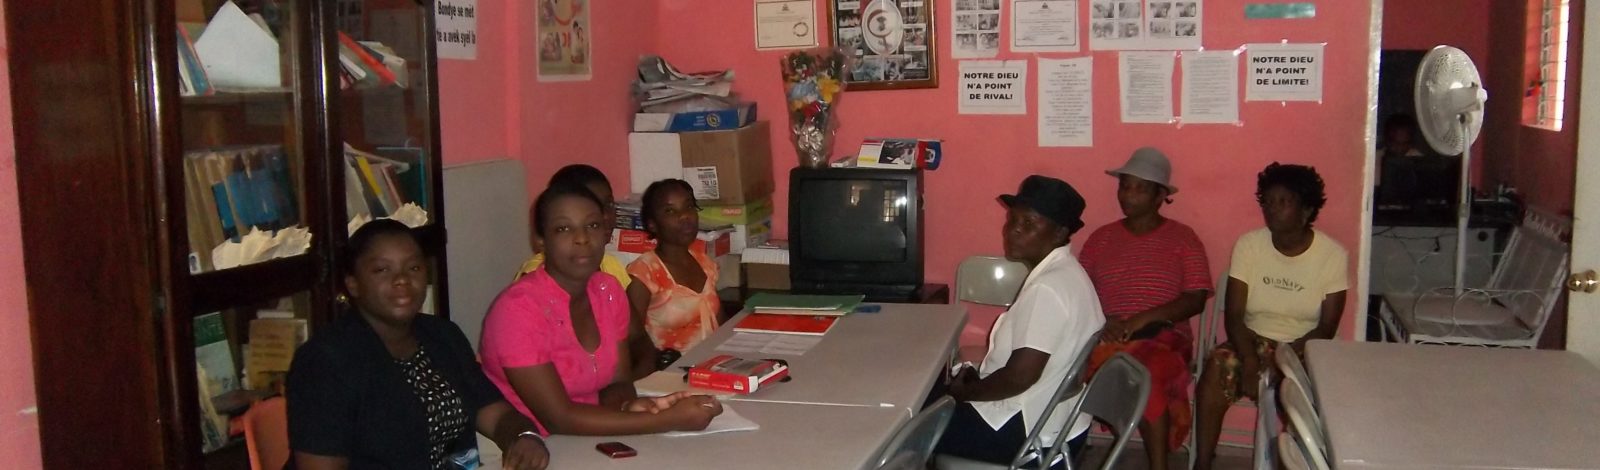 L'accès au micro-crédit: un avenir pour les femmes du quartier de Carrefour-Feuille